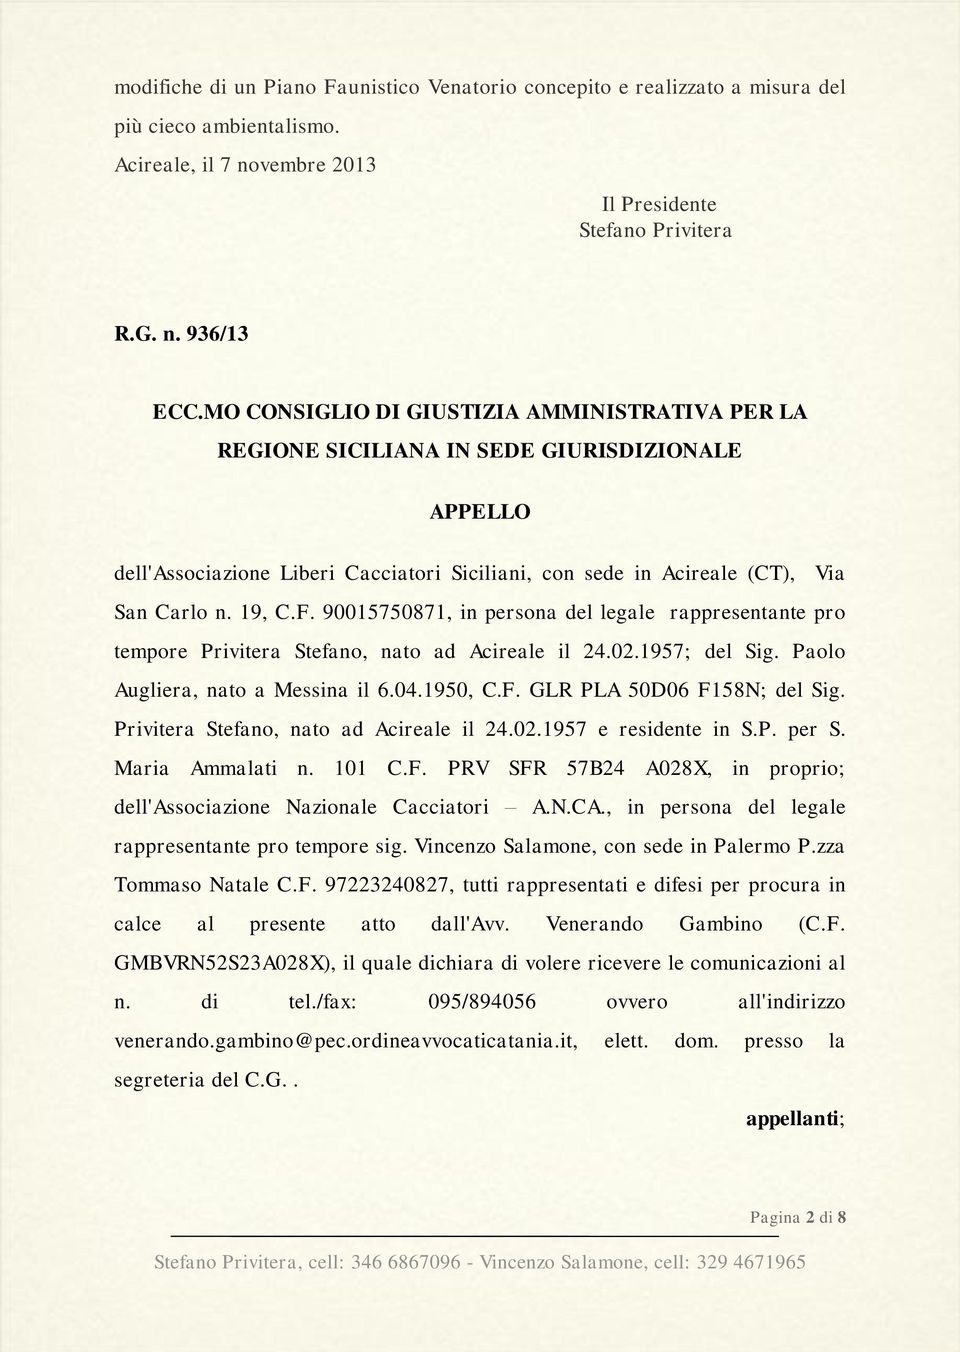 90015750871, in persona del legale rappresentante pro tempore Privitera Stefano, nato ad Acireale il 24.02.1957; del Sig. Paolo Augliera, nato a Messina il 6.04.1950, C.F.